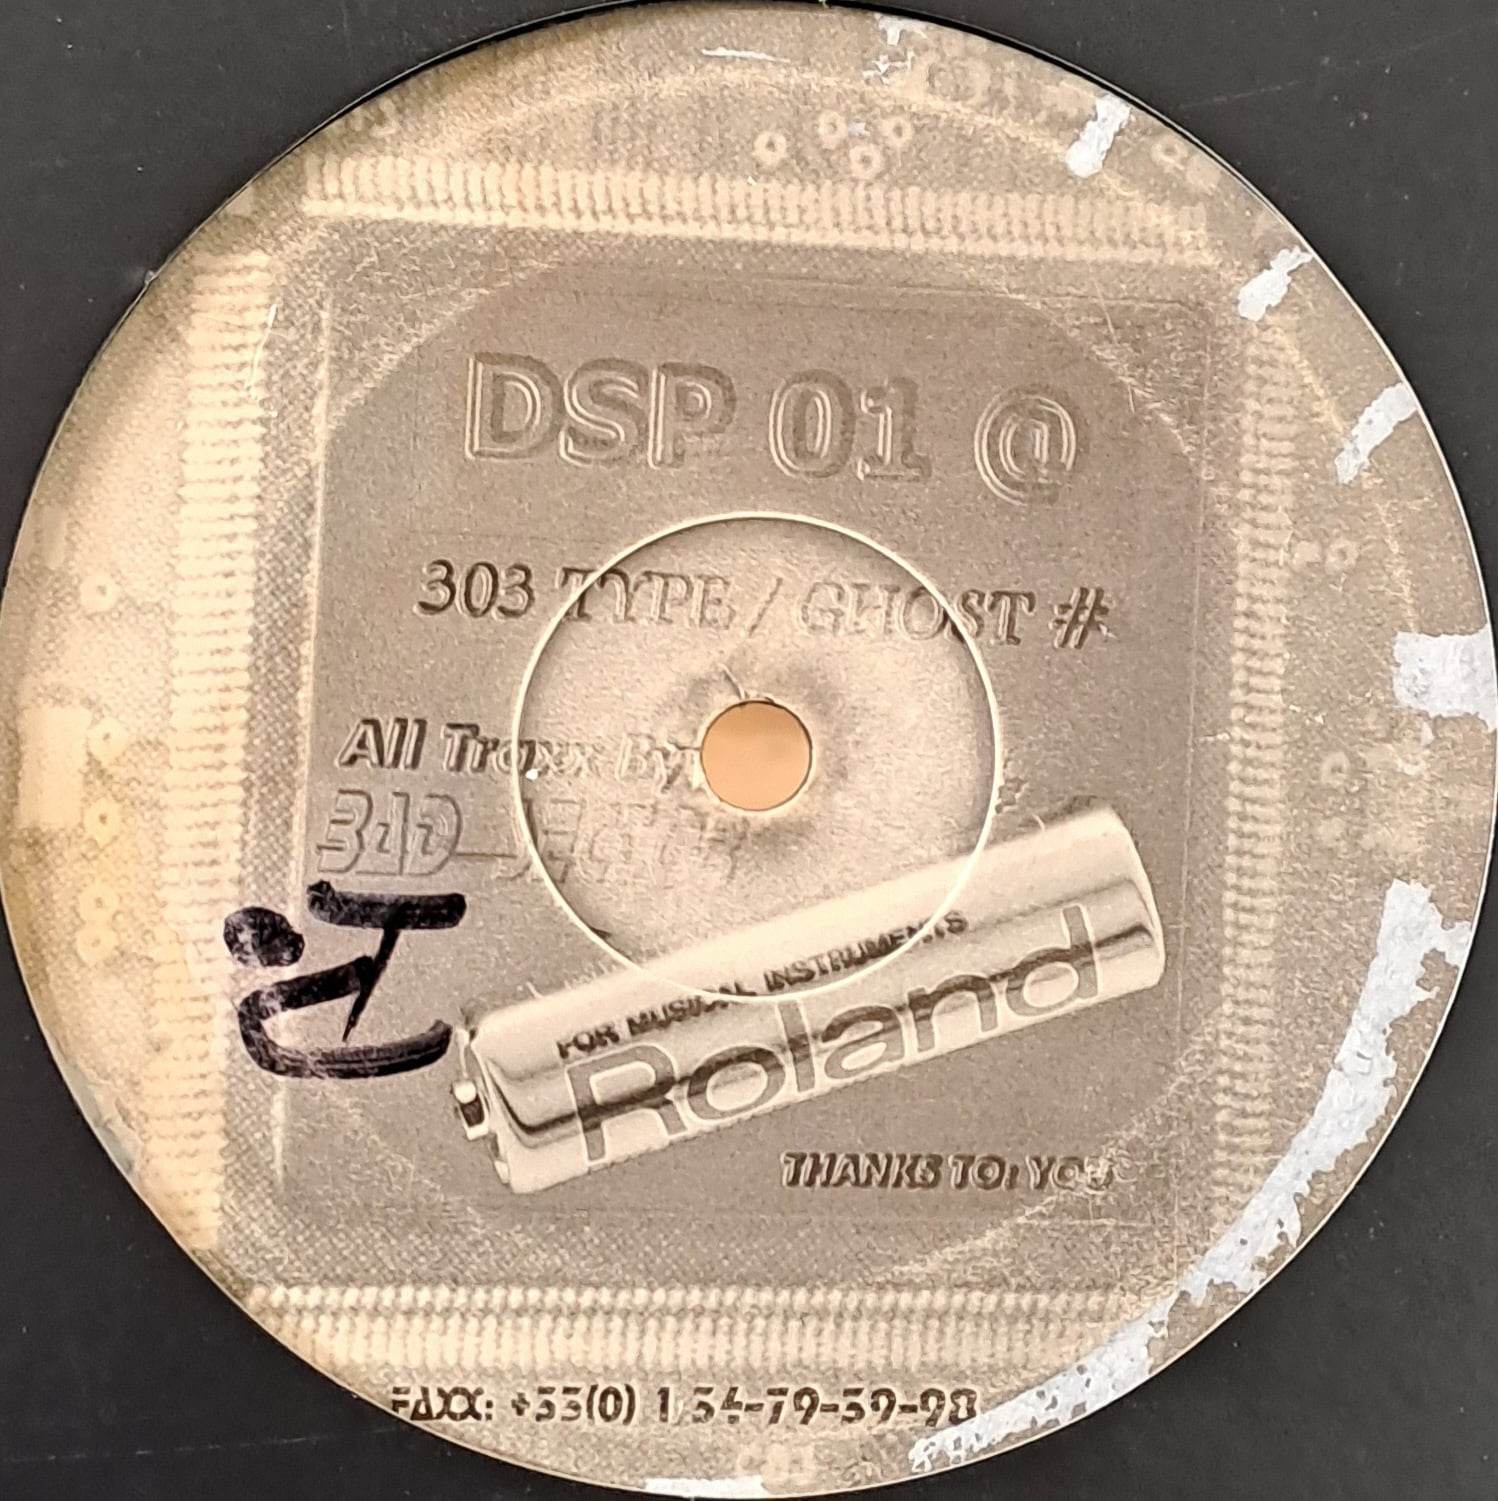 DSP 01 - vinyle freetekno